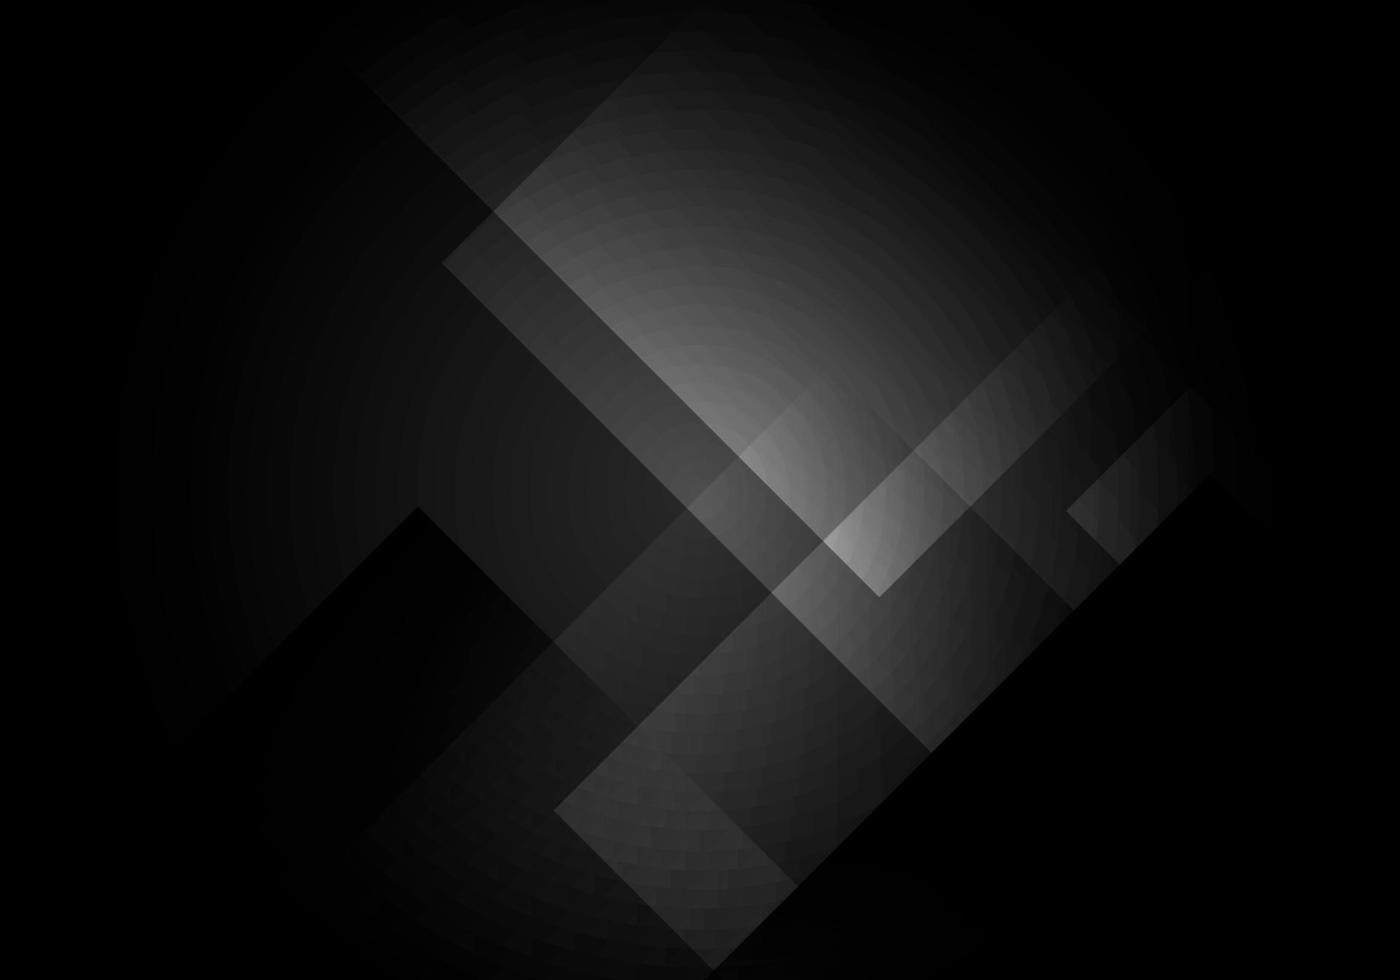 forme carrée abstraite noire et grise en couches sur fond sombre vecteur